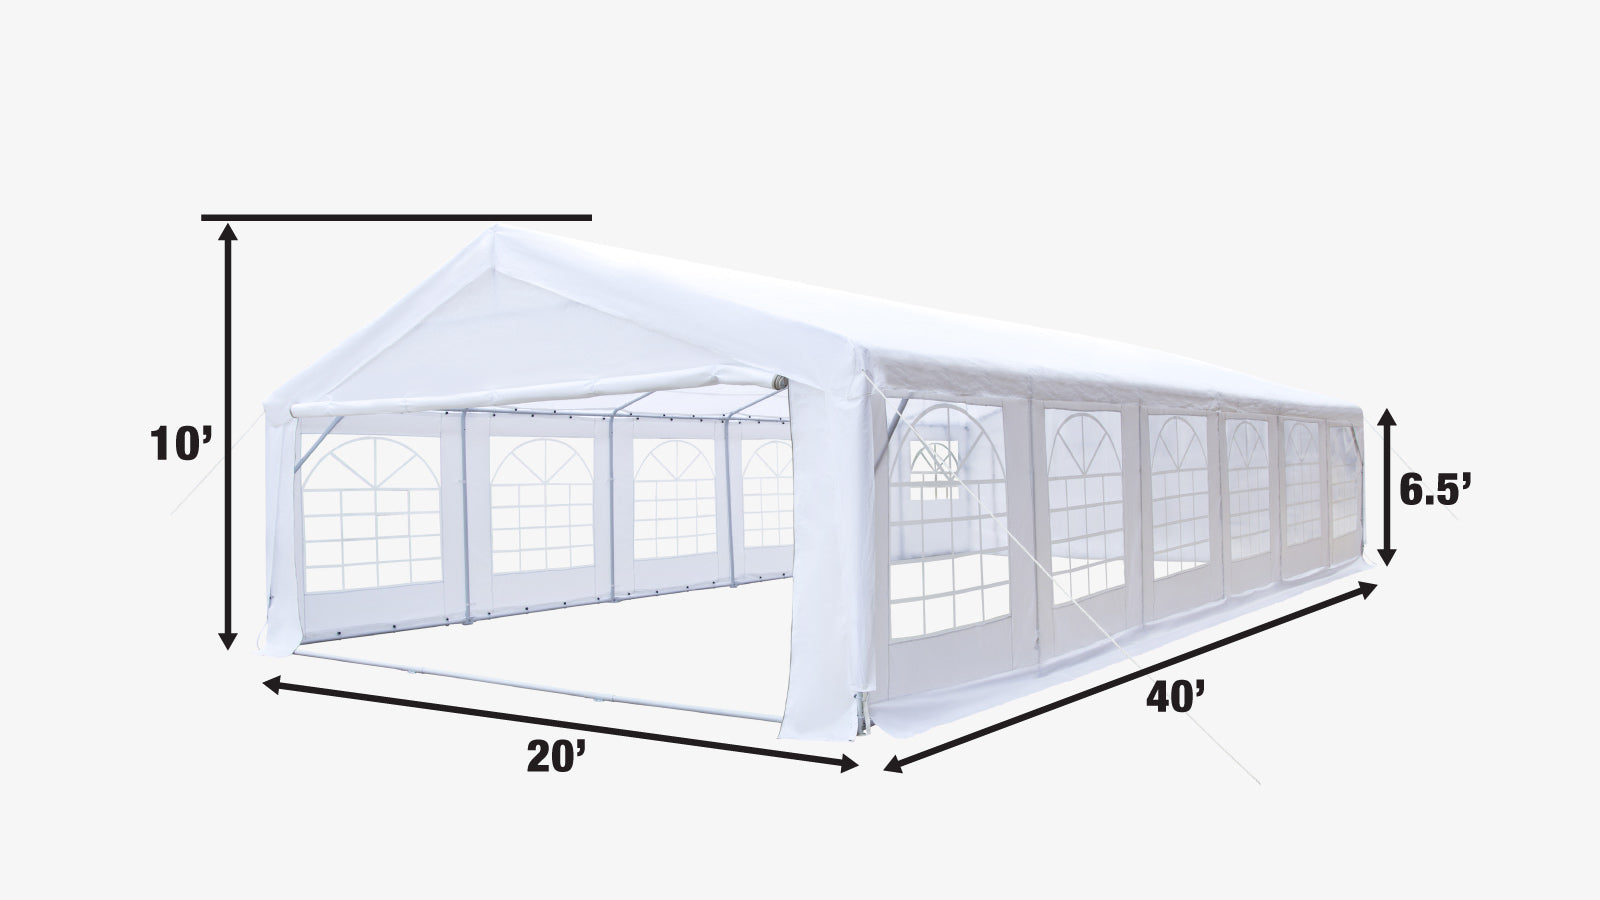 TMG Industrial 20' x 40' Tente de fête extérieure robuste avec parois latérales amovibles et portes enroulables, couverture en PE de 11 oz, plafond de 6'6